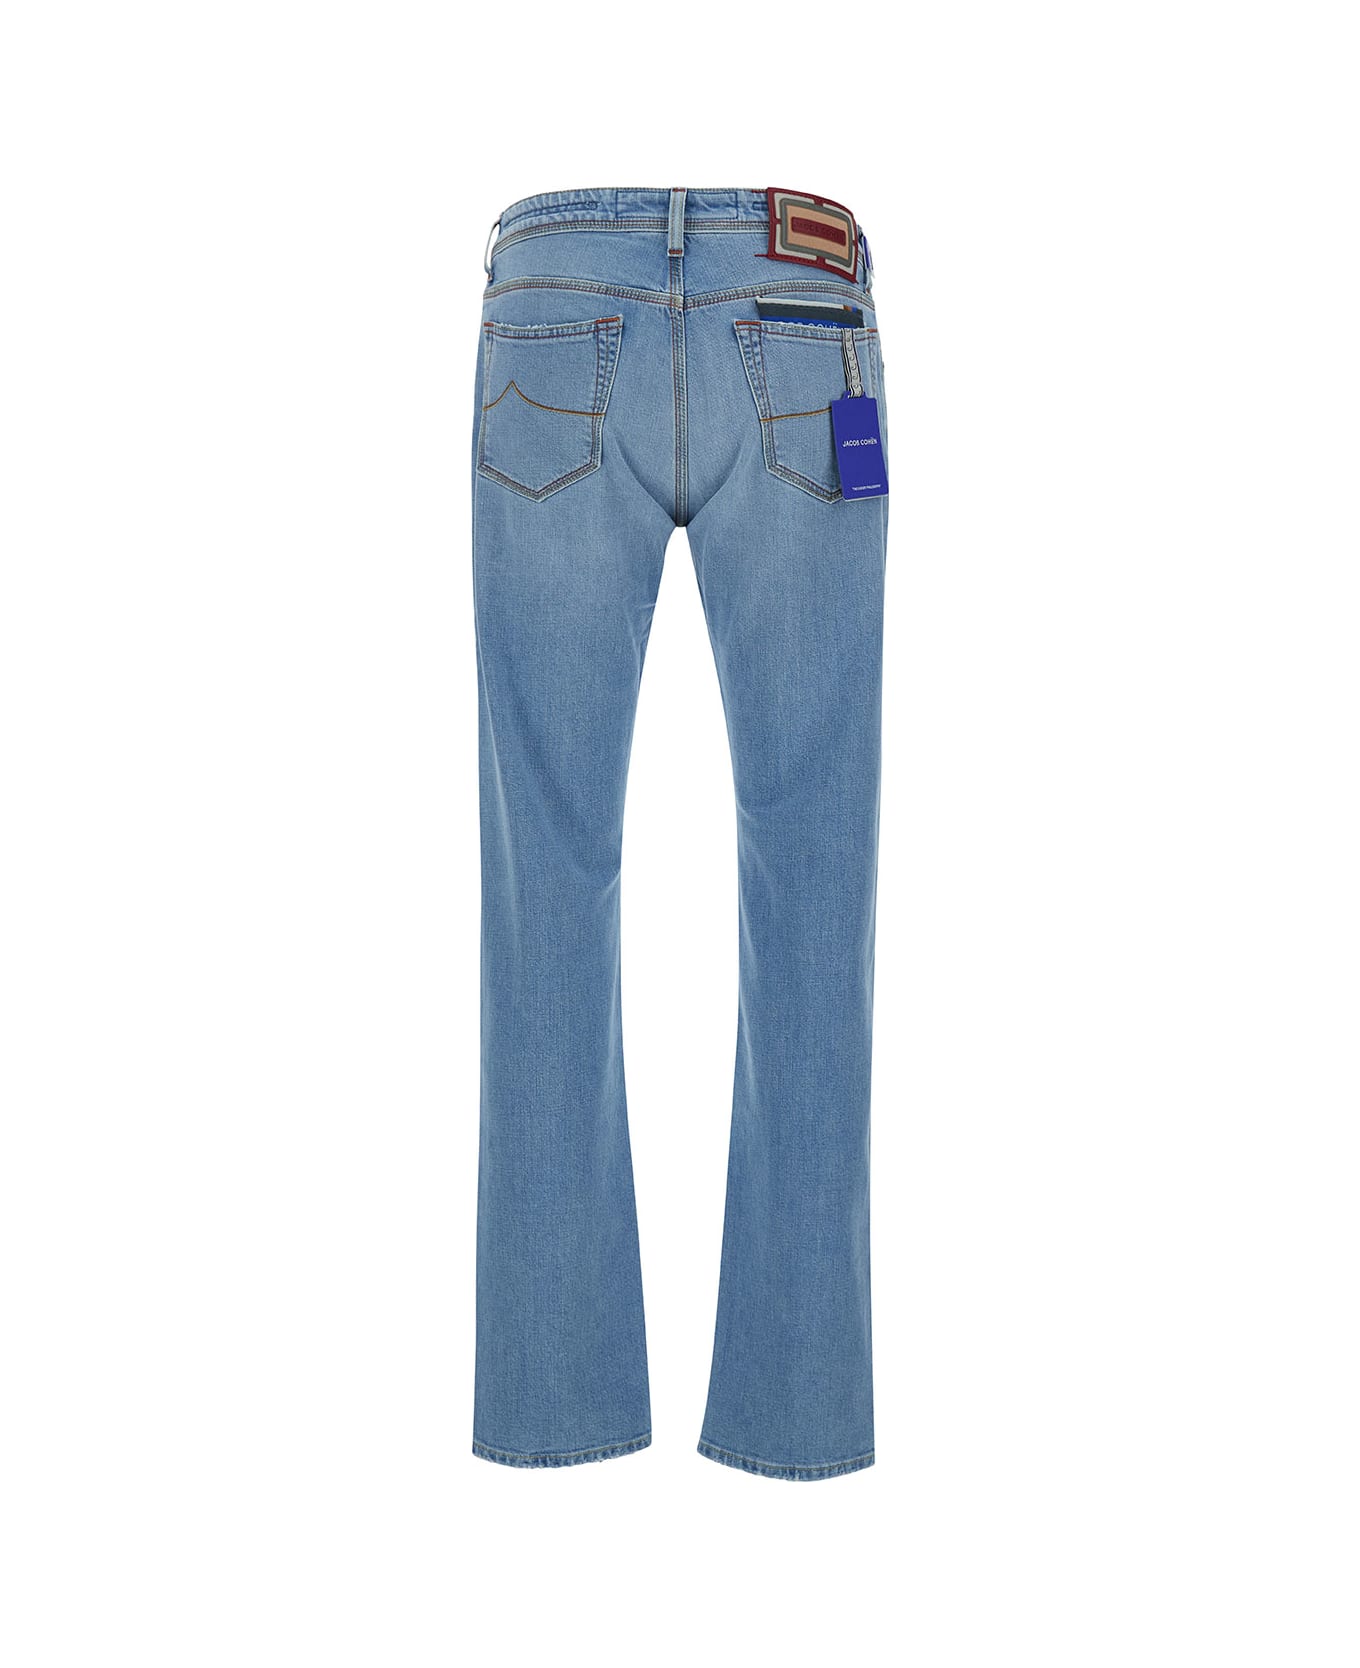 Jacob Cohen Light Blue Slim Jeans In Cotton Man - Light blue